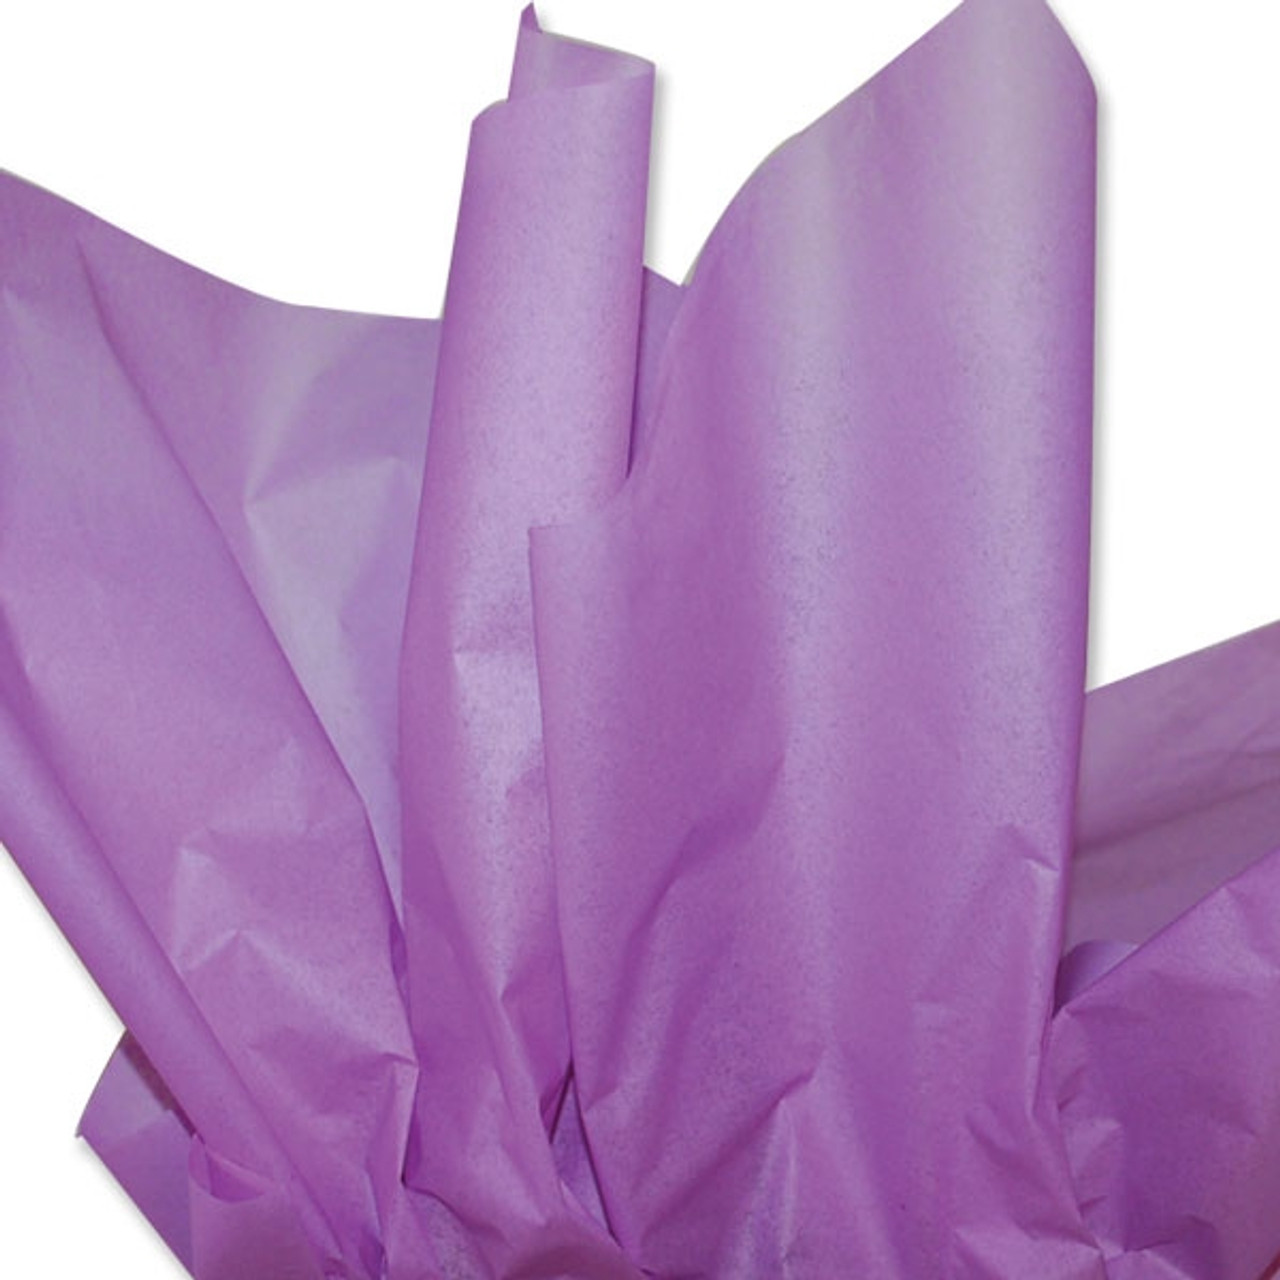 Colored Tissue Paper - Lilac - NE-325 - 480 Sheets per Ream